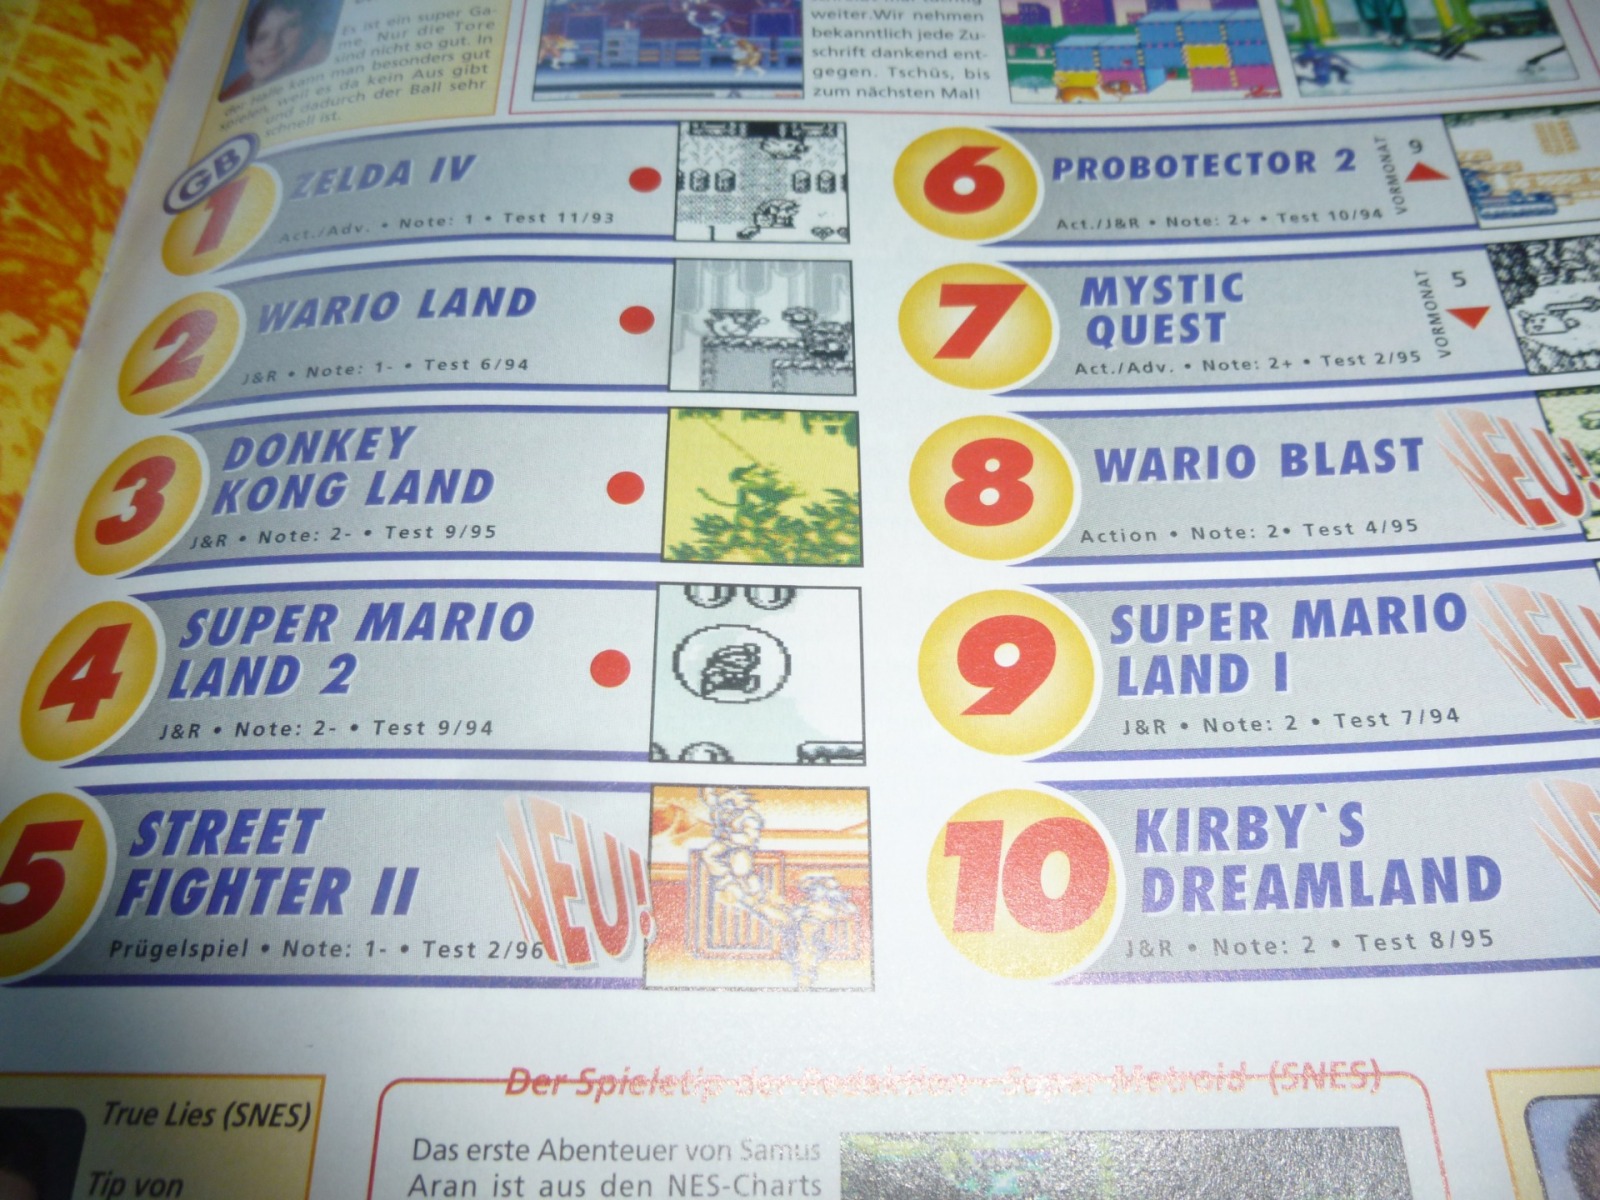 TOTAL Das unabhängige Magazin - 100 Nintendo - Ausgabe 4/96 1996 12